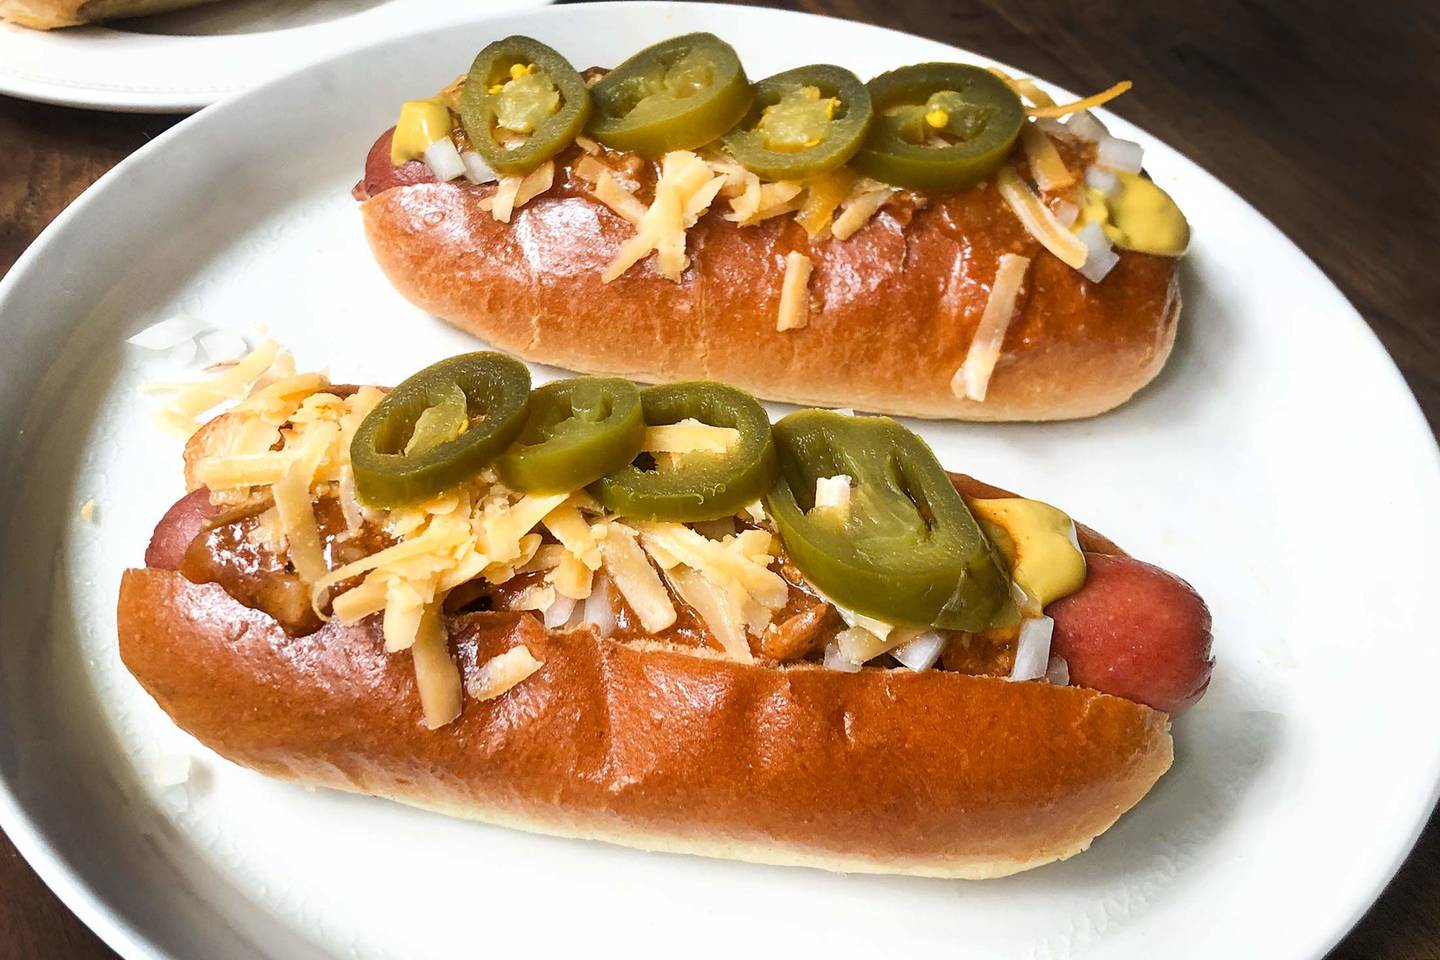 Los hot dog de Shaqs se benefician del picante de los anillos de jalapeño. Fotógrafo: Kate Krader/Bloombergdfd